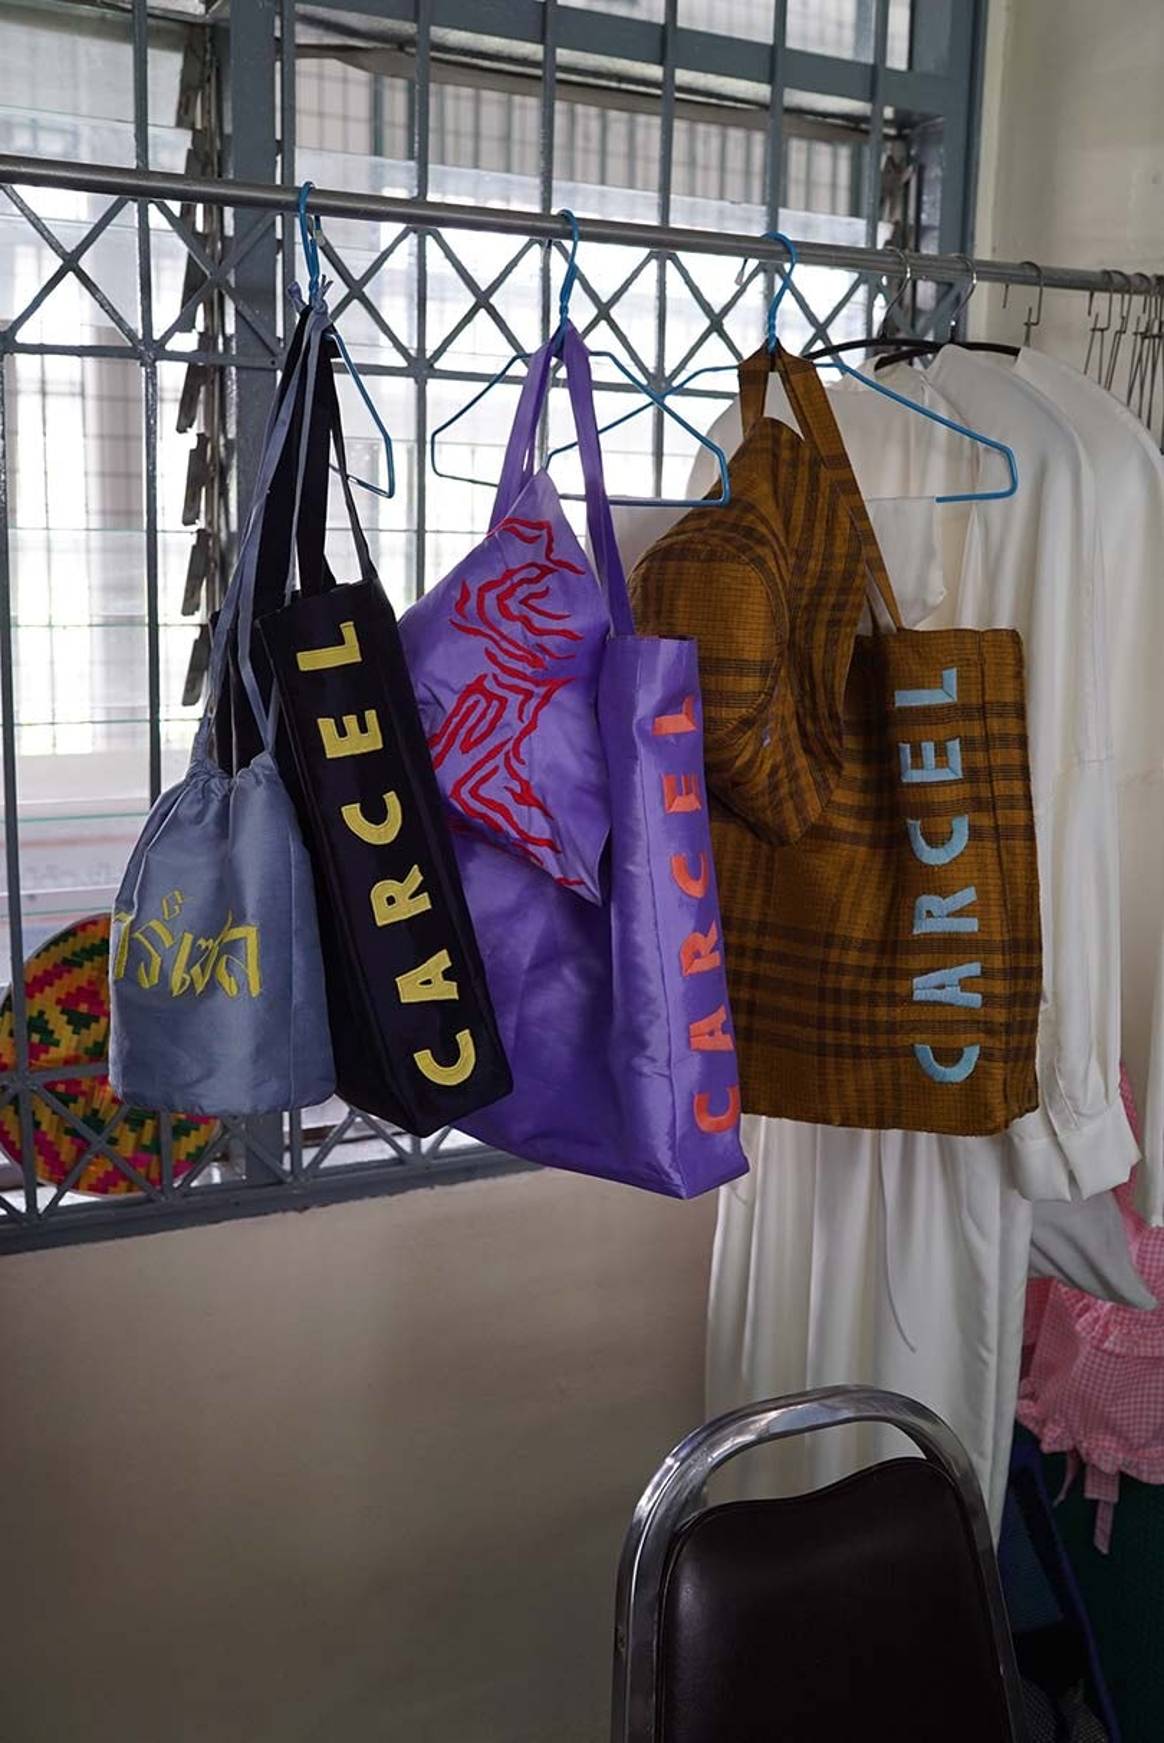 Carcel lanza una línea fabricada por mujeres presas en Tailandia